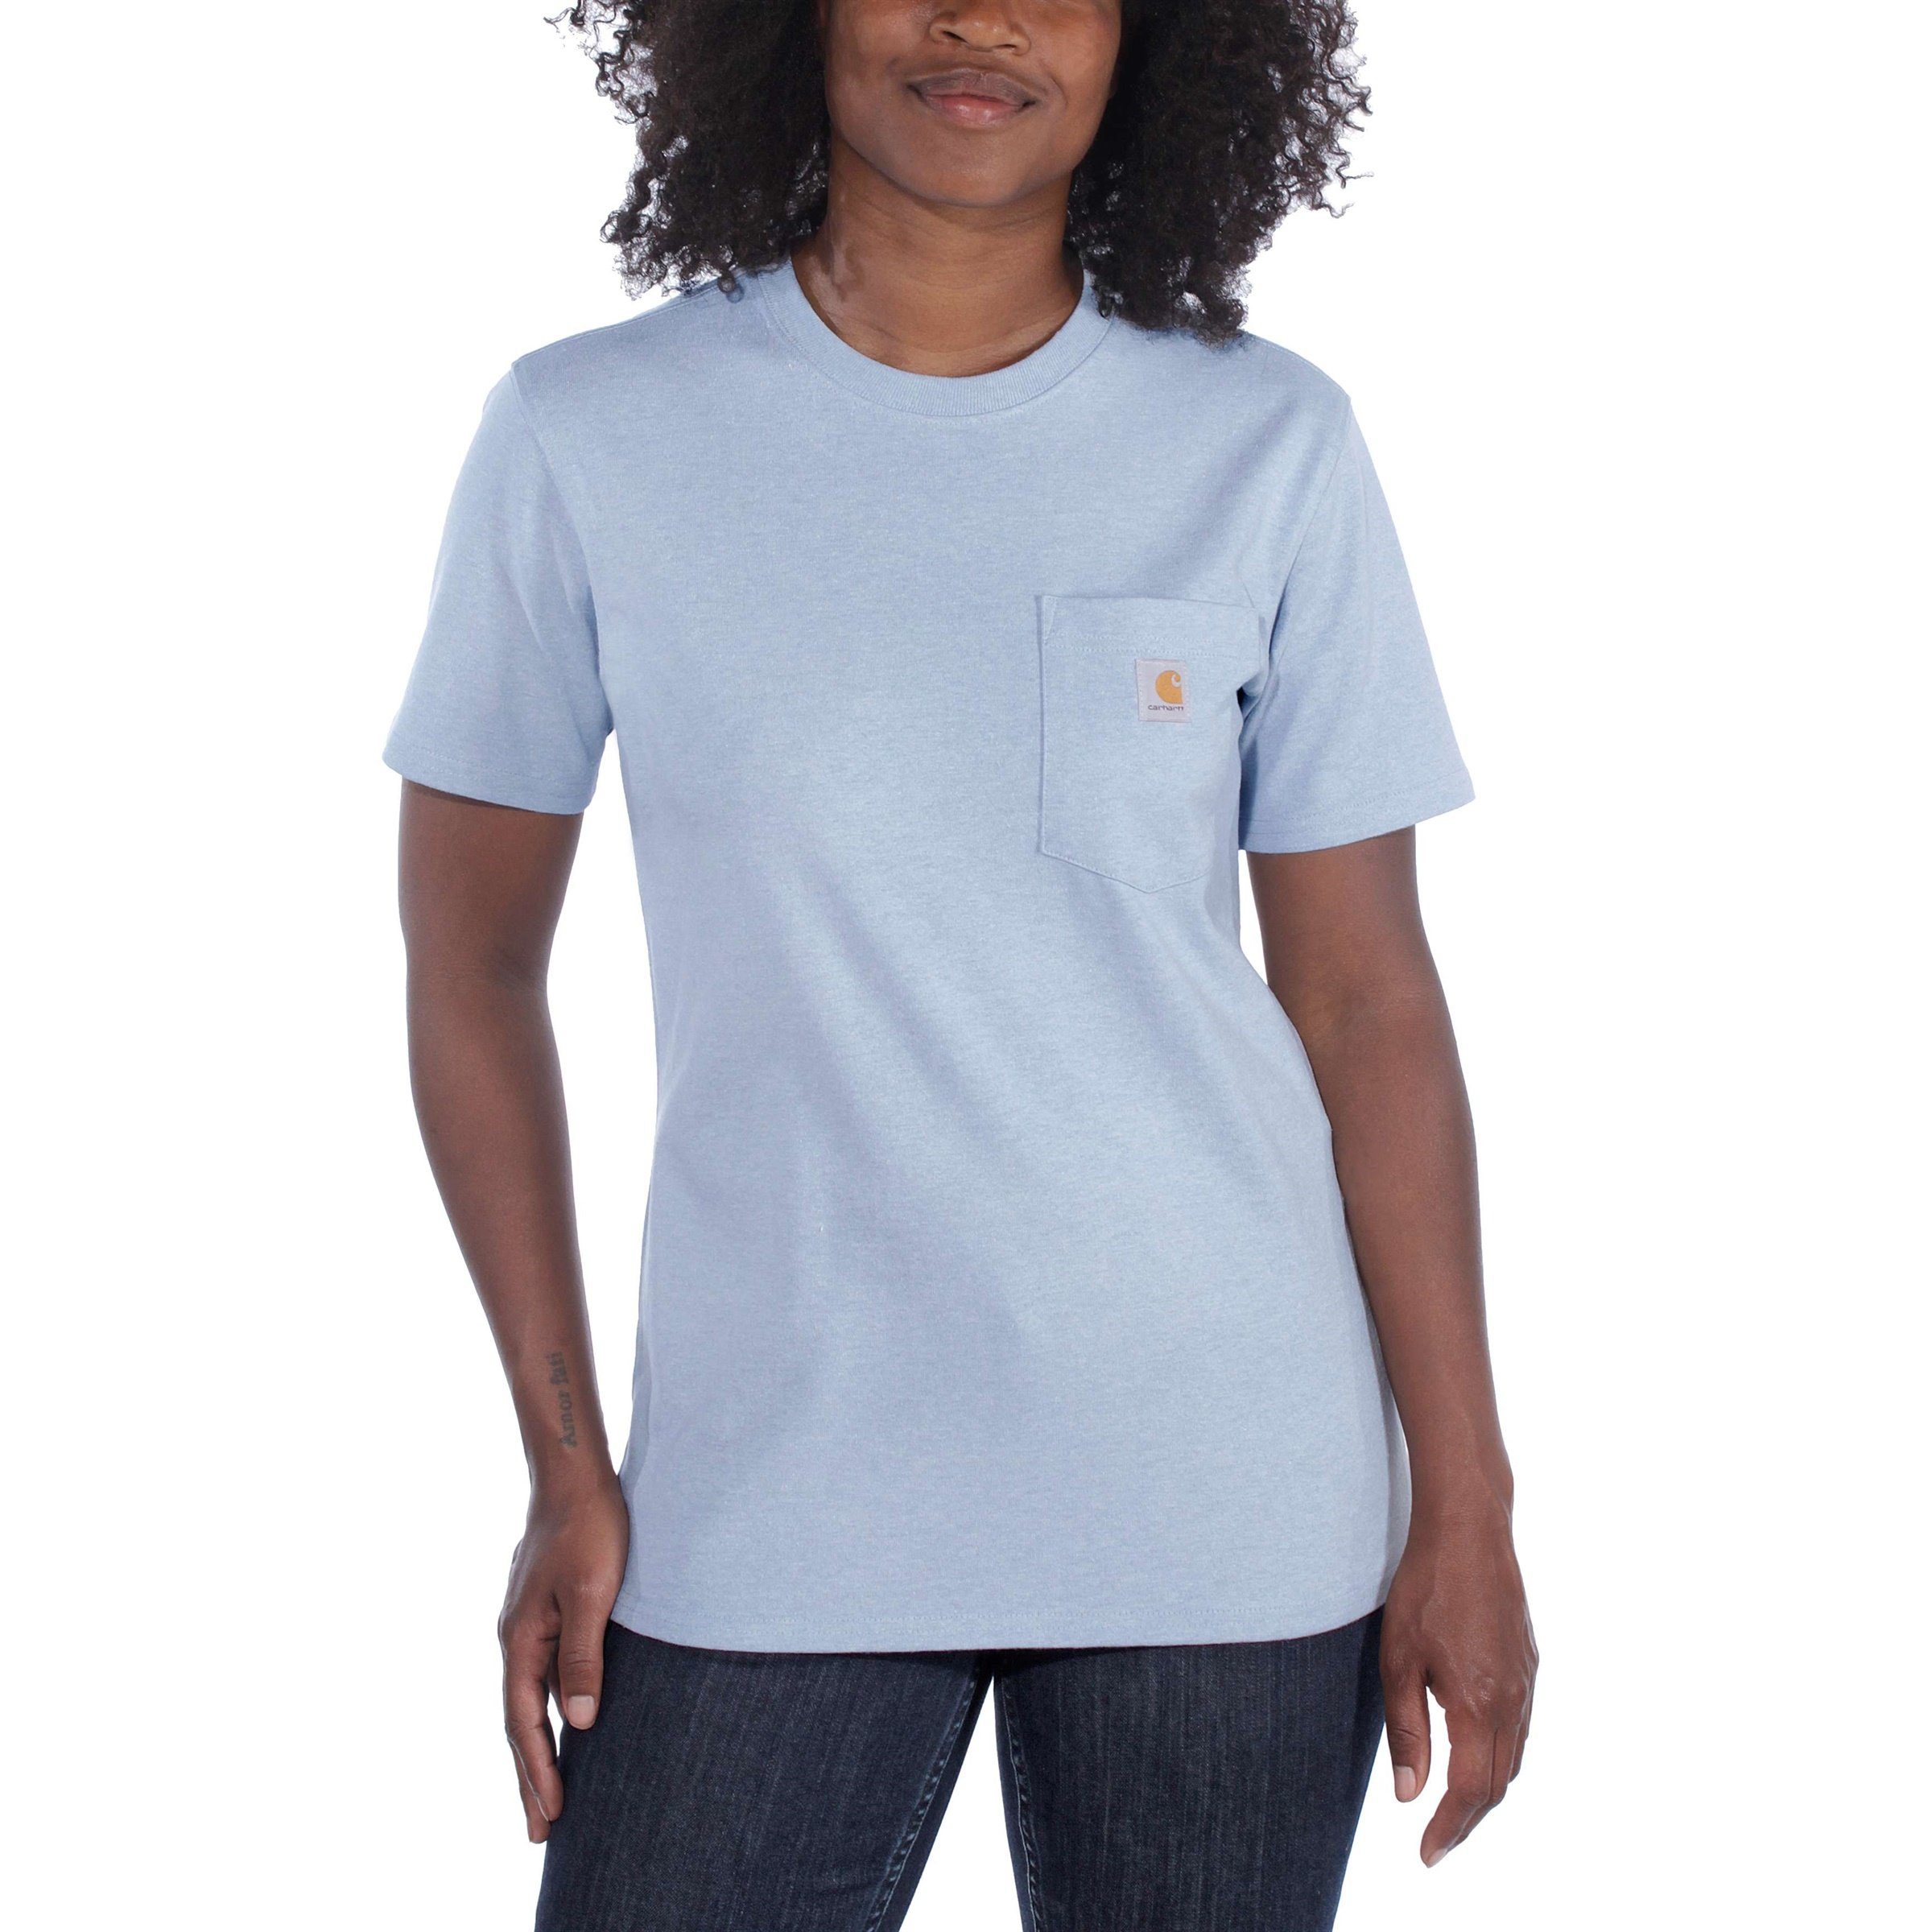 T-Shirt T-Shirt Adult rose Heavyweight ash Short-Sleeve Carhartt Damen Fit Pocket Loose Carhartt